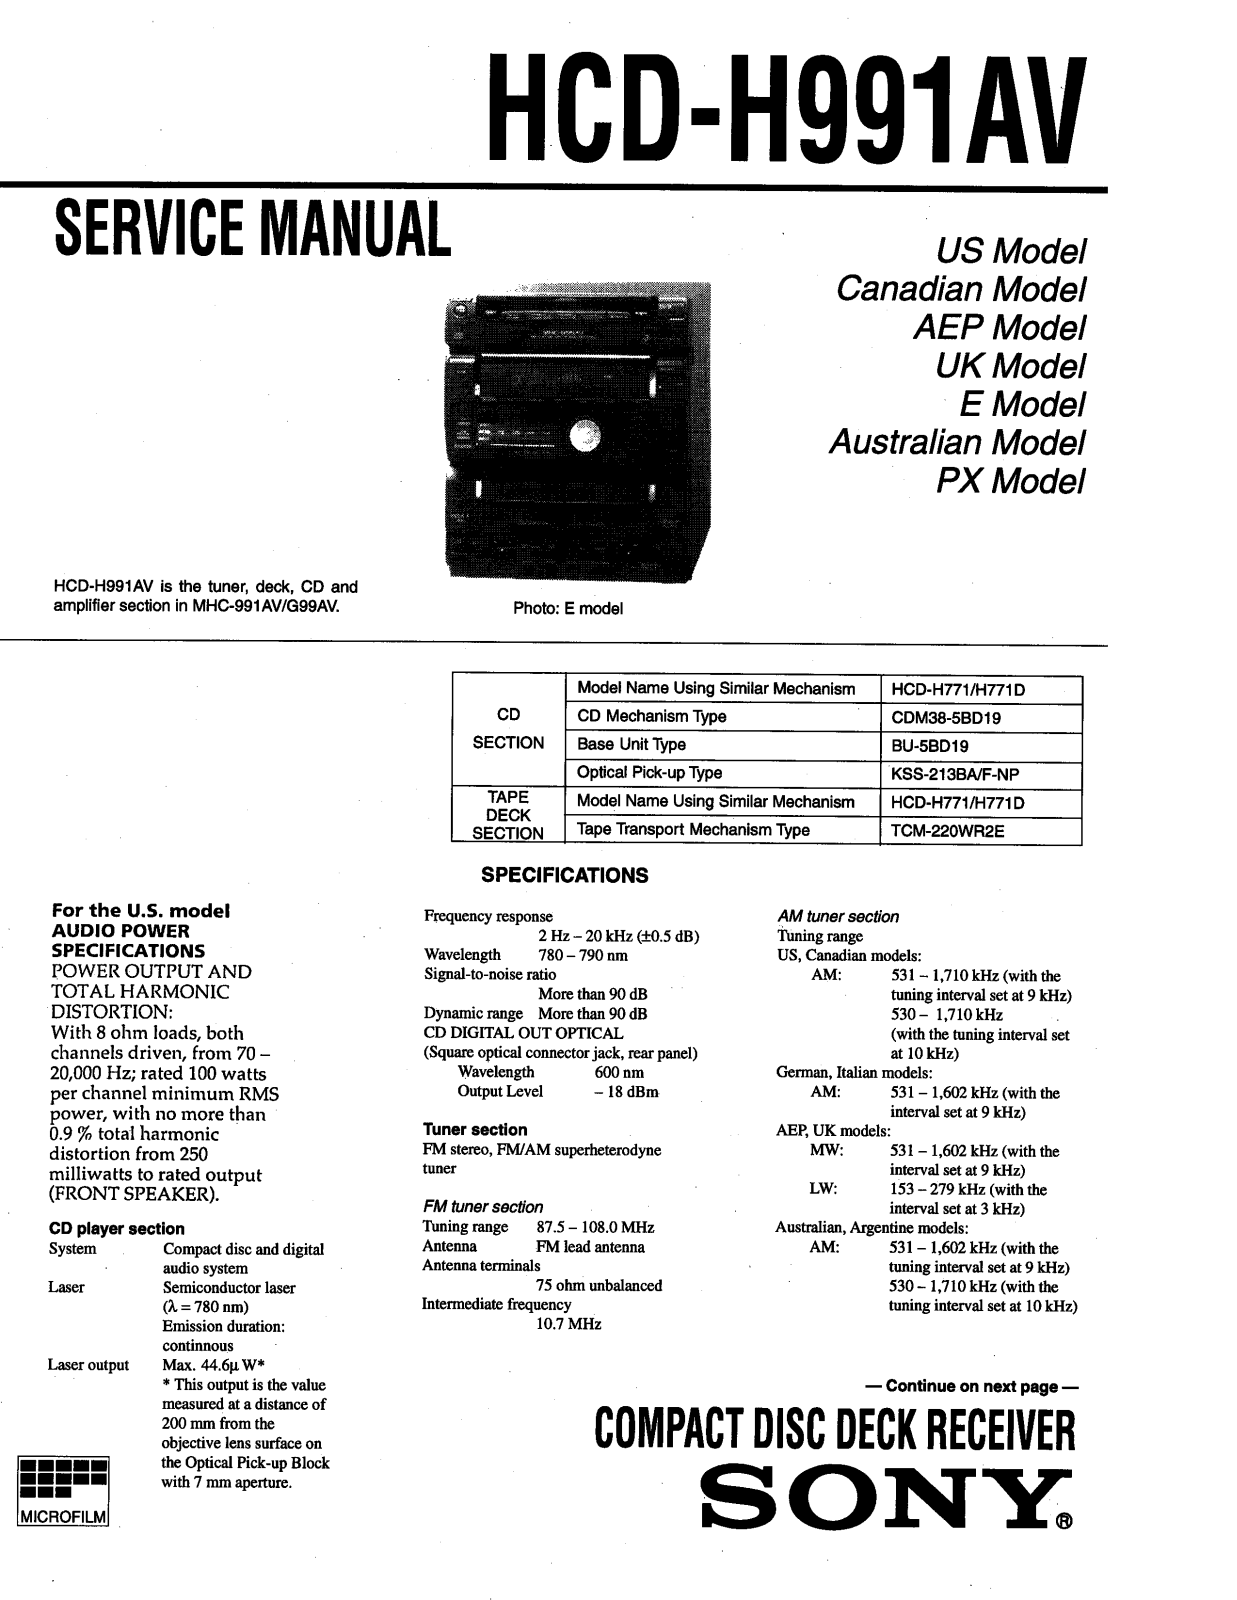 Sony HCDH-991-AV Service manual